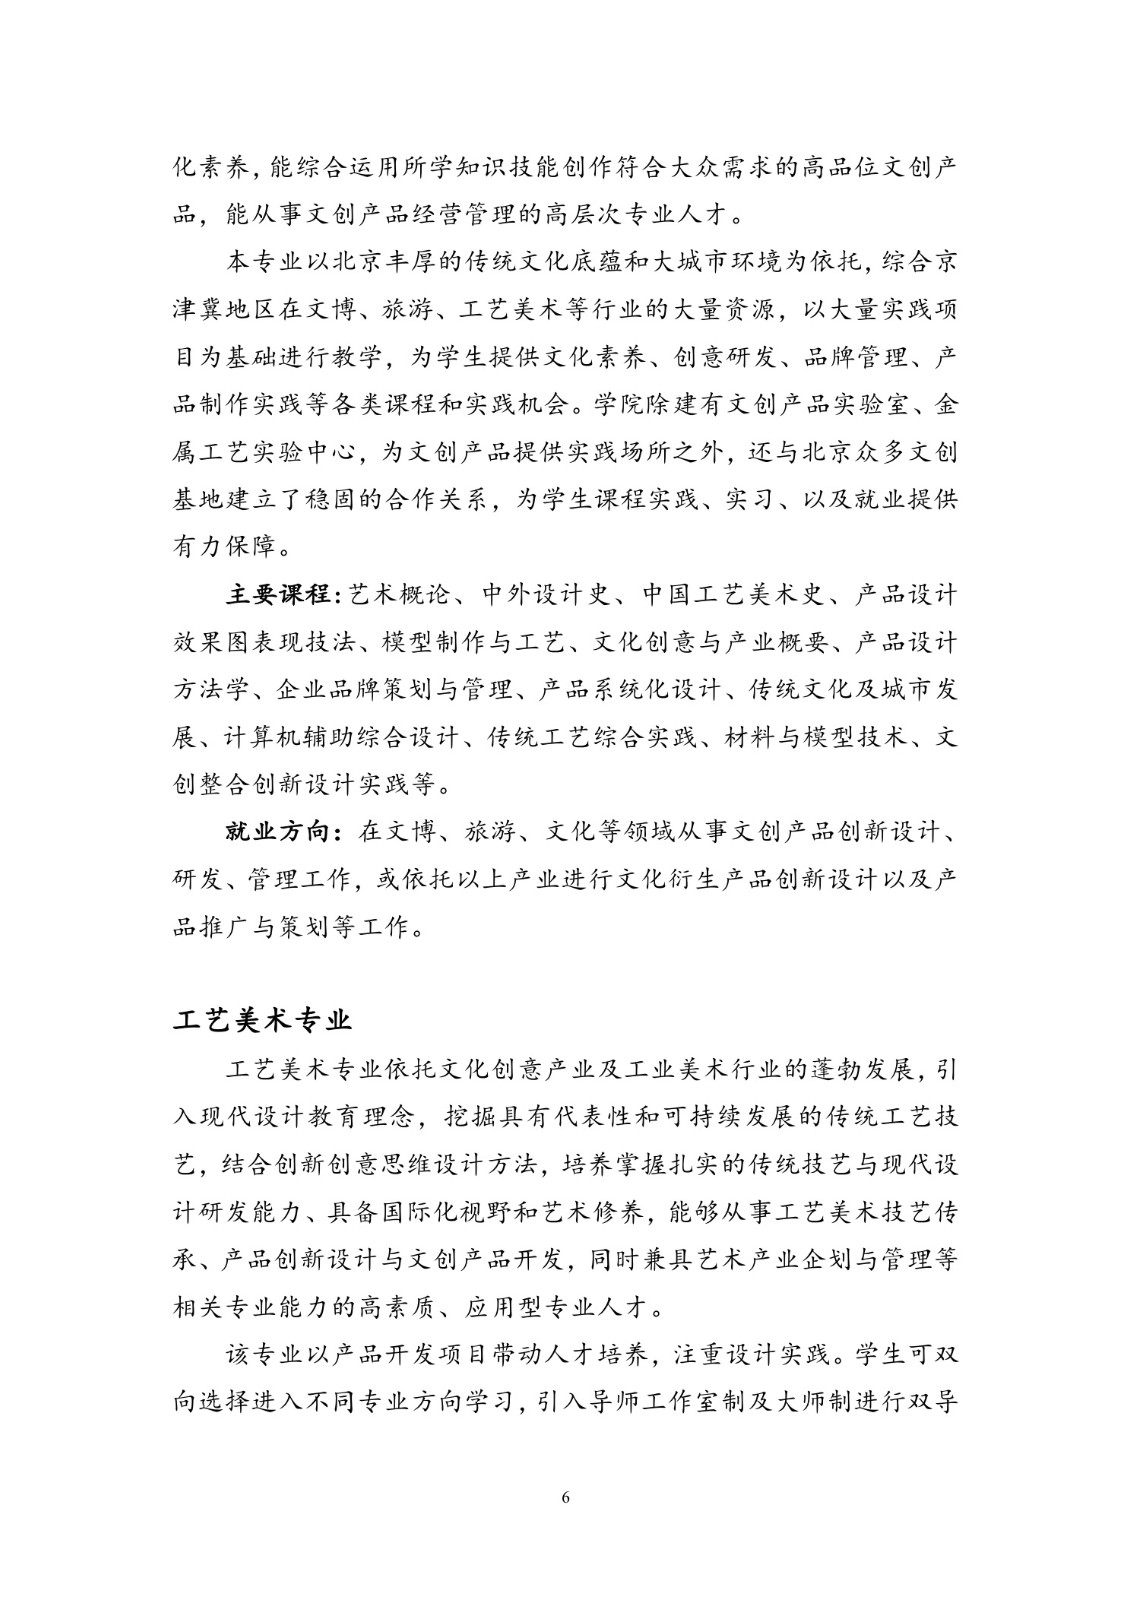 北京联合大学2018年艺术类招生简章20180103-page6 2.jpeg